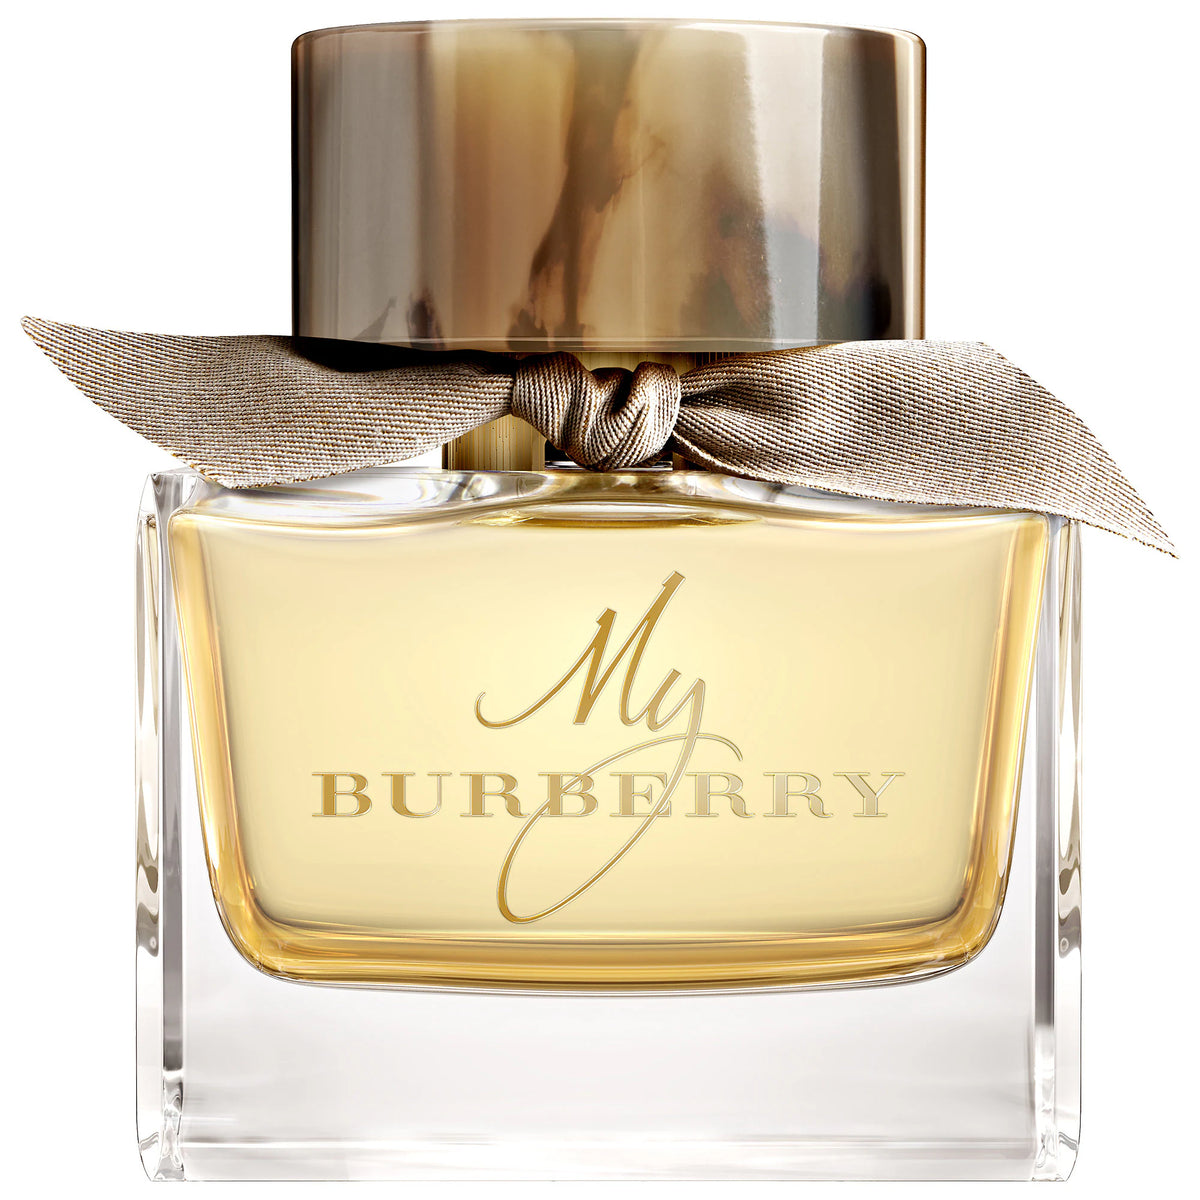 Burberry My Burberry For Women - Eau De Parfum, 90ml